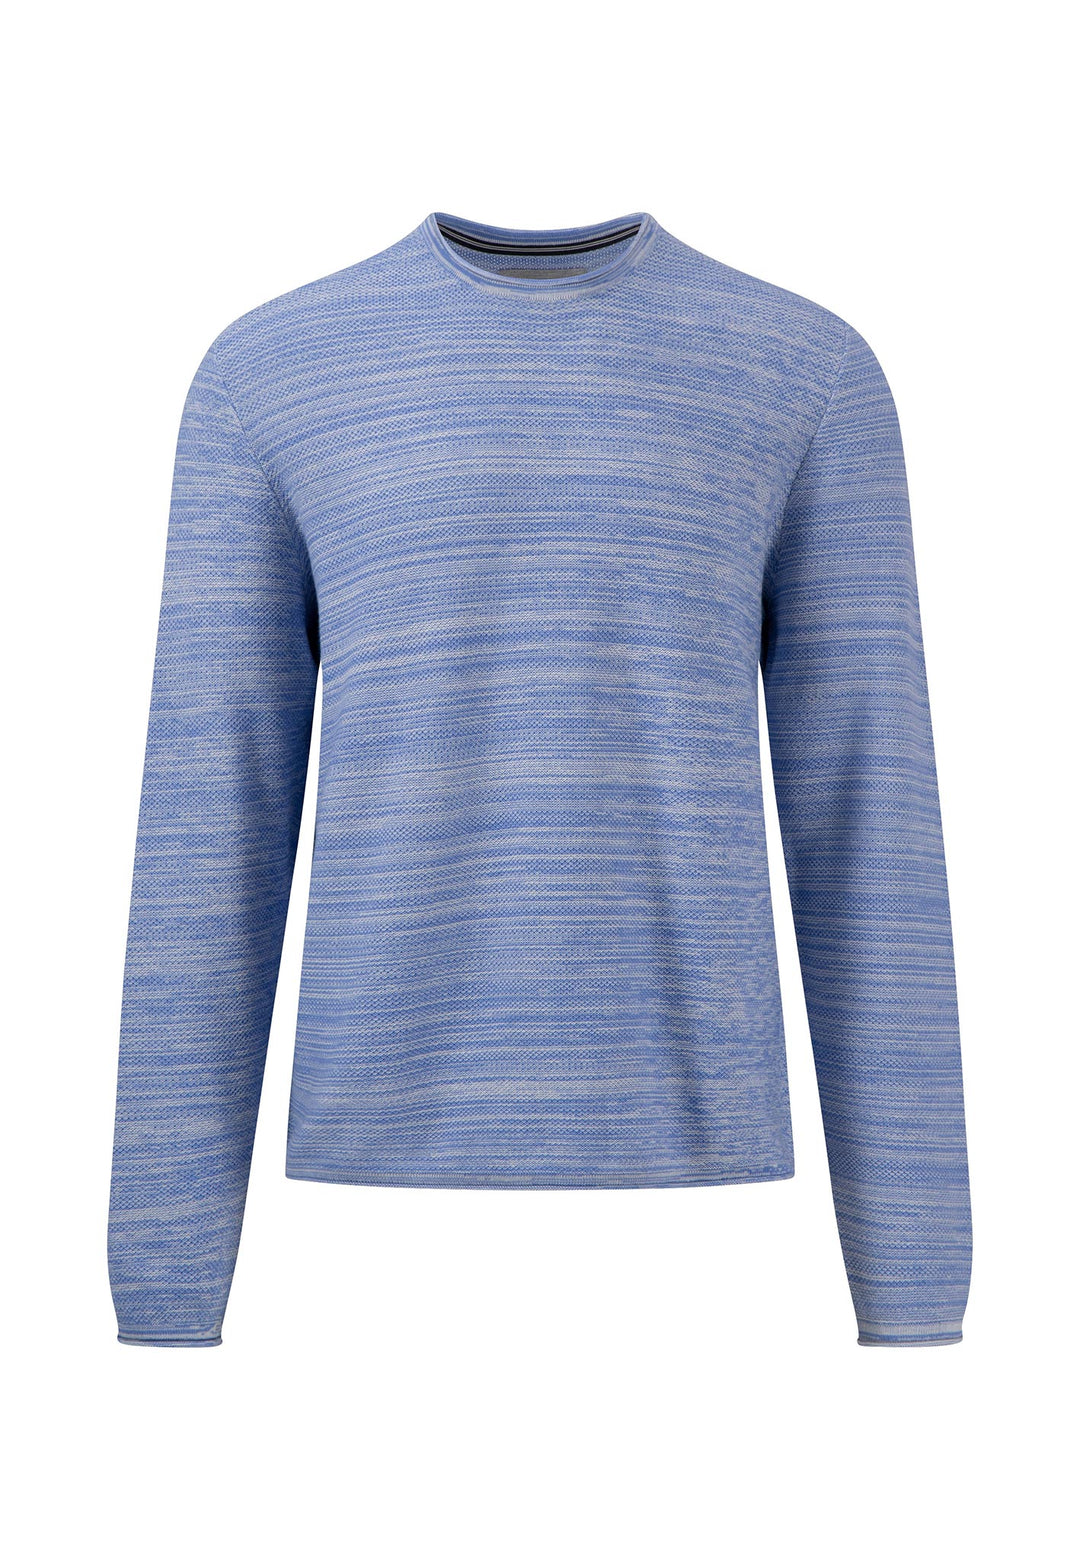 Men\'s sweater & knitted jackets – Offizieller Shop | Online FYNCH-HATTON